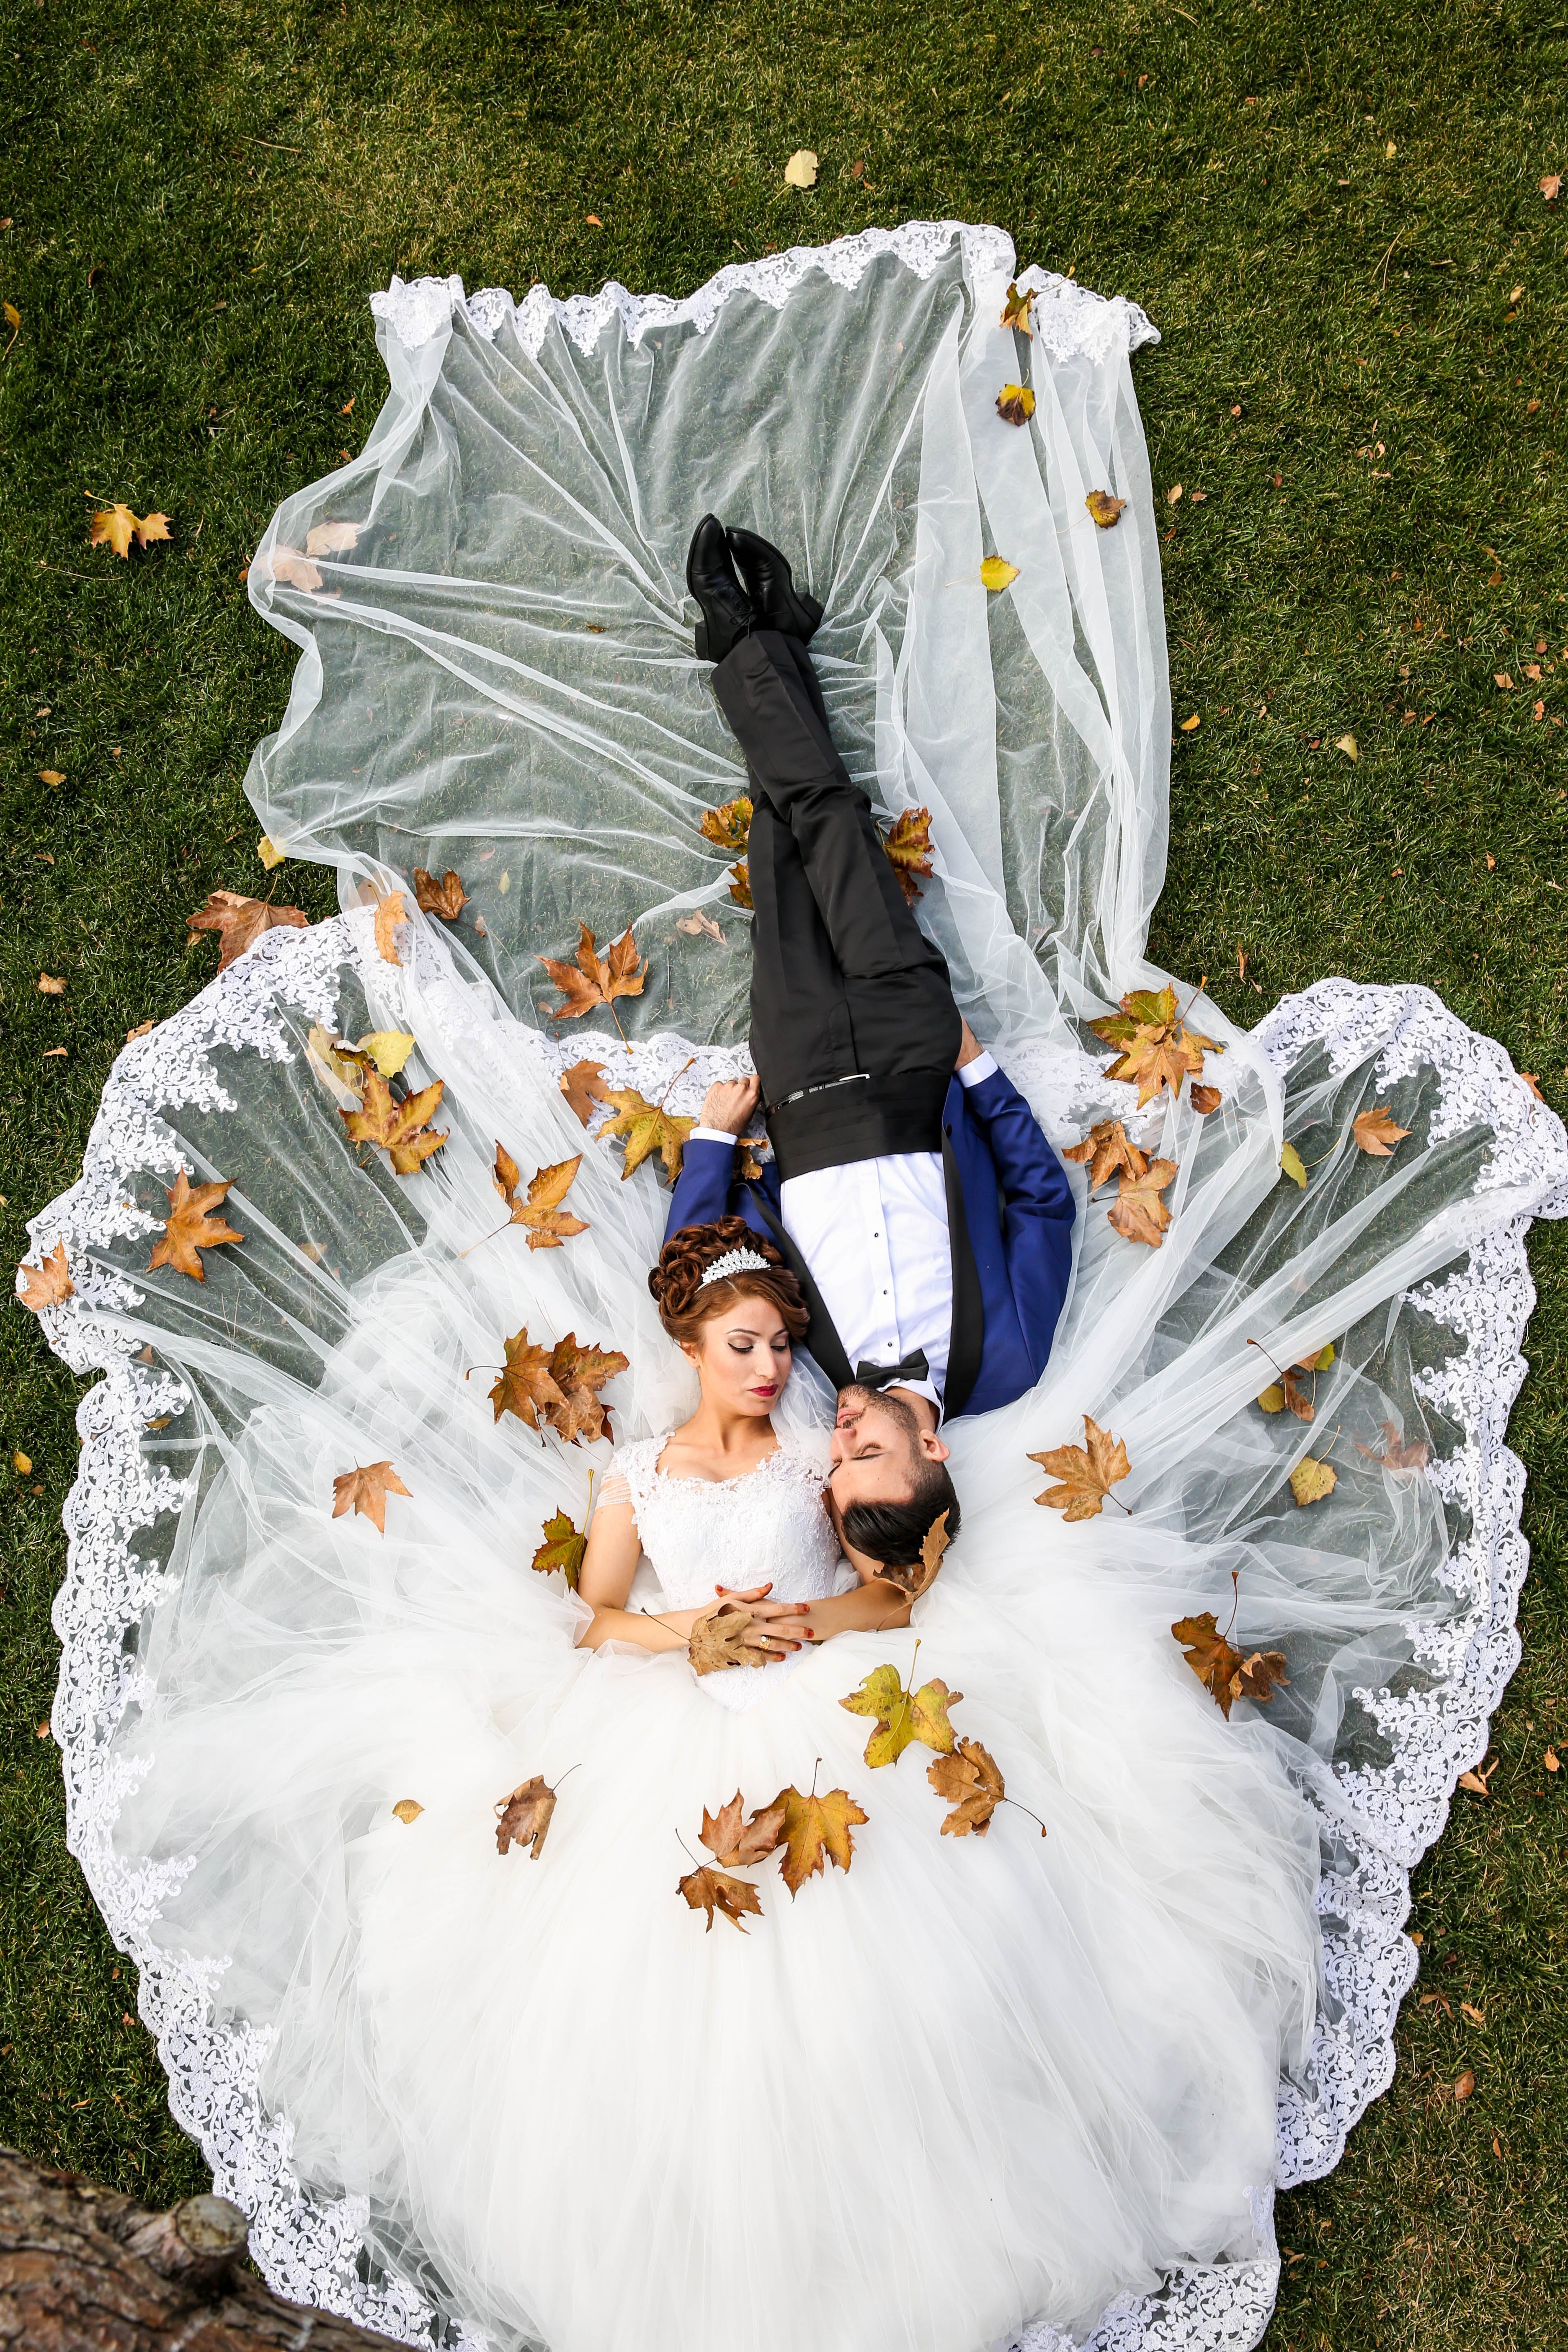 Un couple de jeunes mariés allongé sur l'herbe dans les vêtements de mariage | Source : Pexels